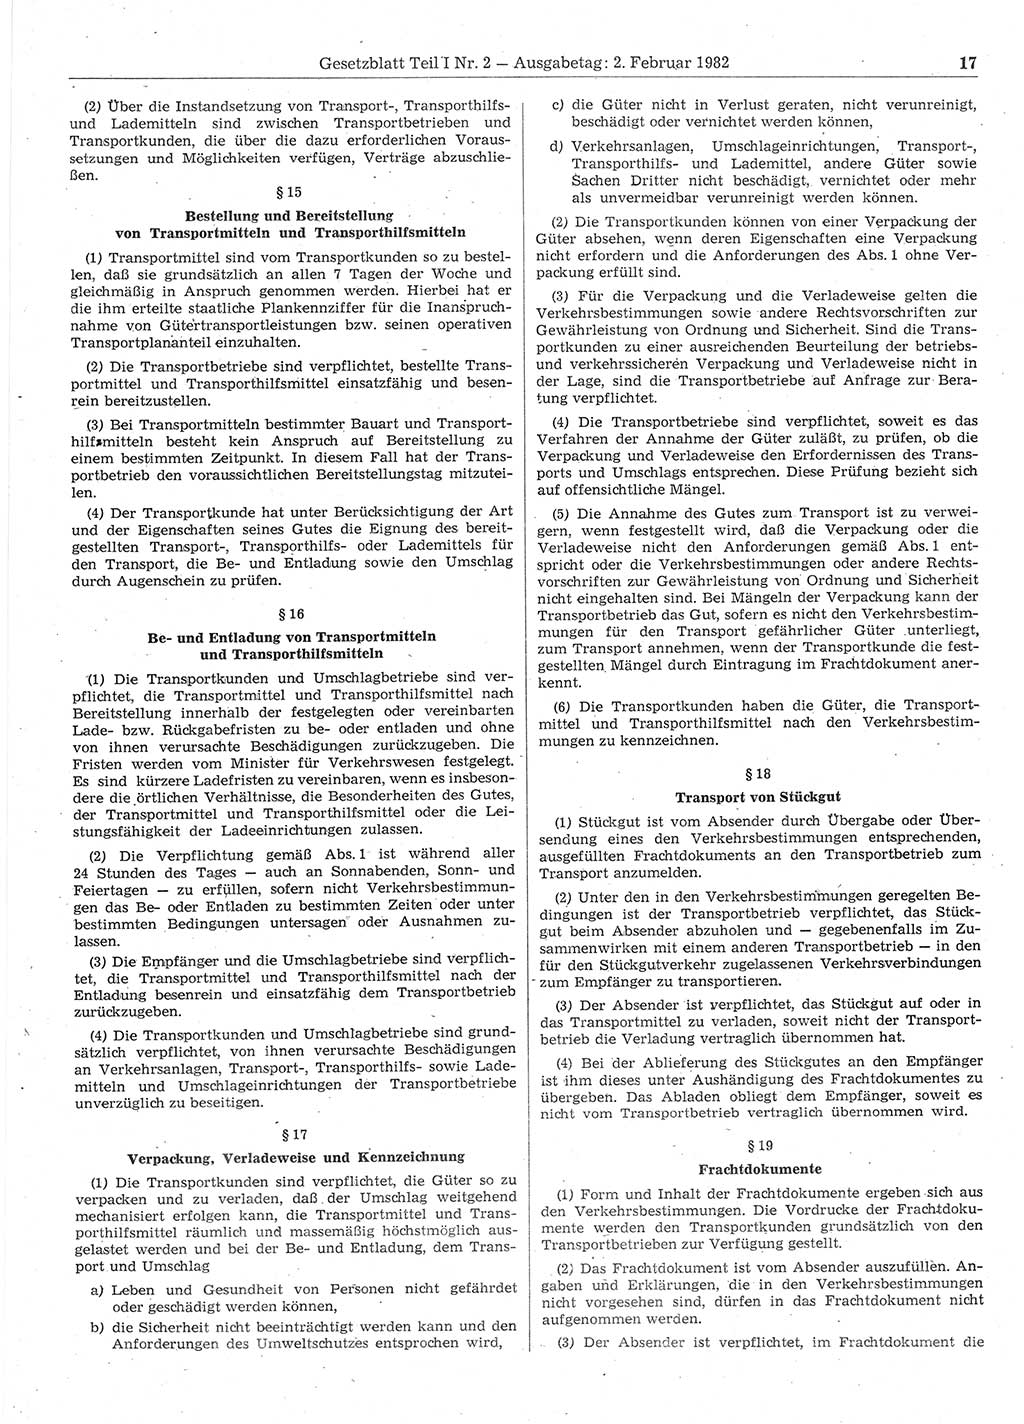 Gesetzblatt (GBl.) der Deutschen Demokratischen Republik (DDR) Teil Ⅰ 1982, Seite 17 (GBl. DDR Ⅰ 1982, S. 17)